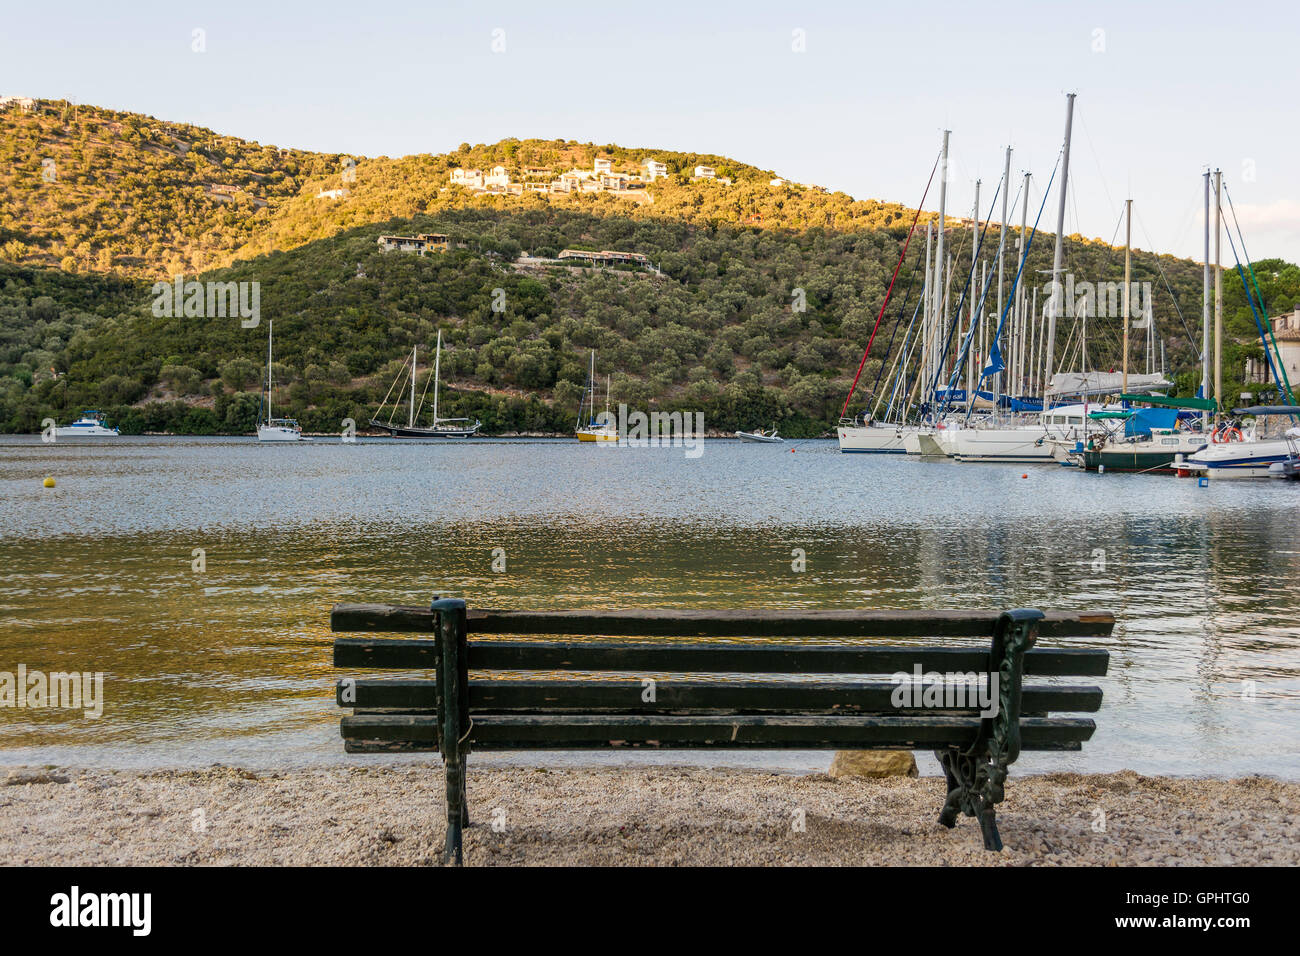 Sivota Dorf Touristenort in Lefkada Griechenland mit Segelschiffen ...